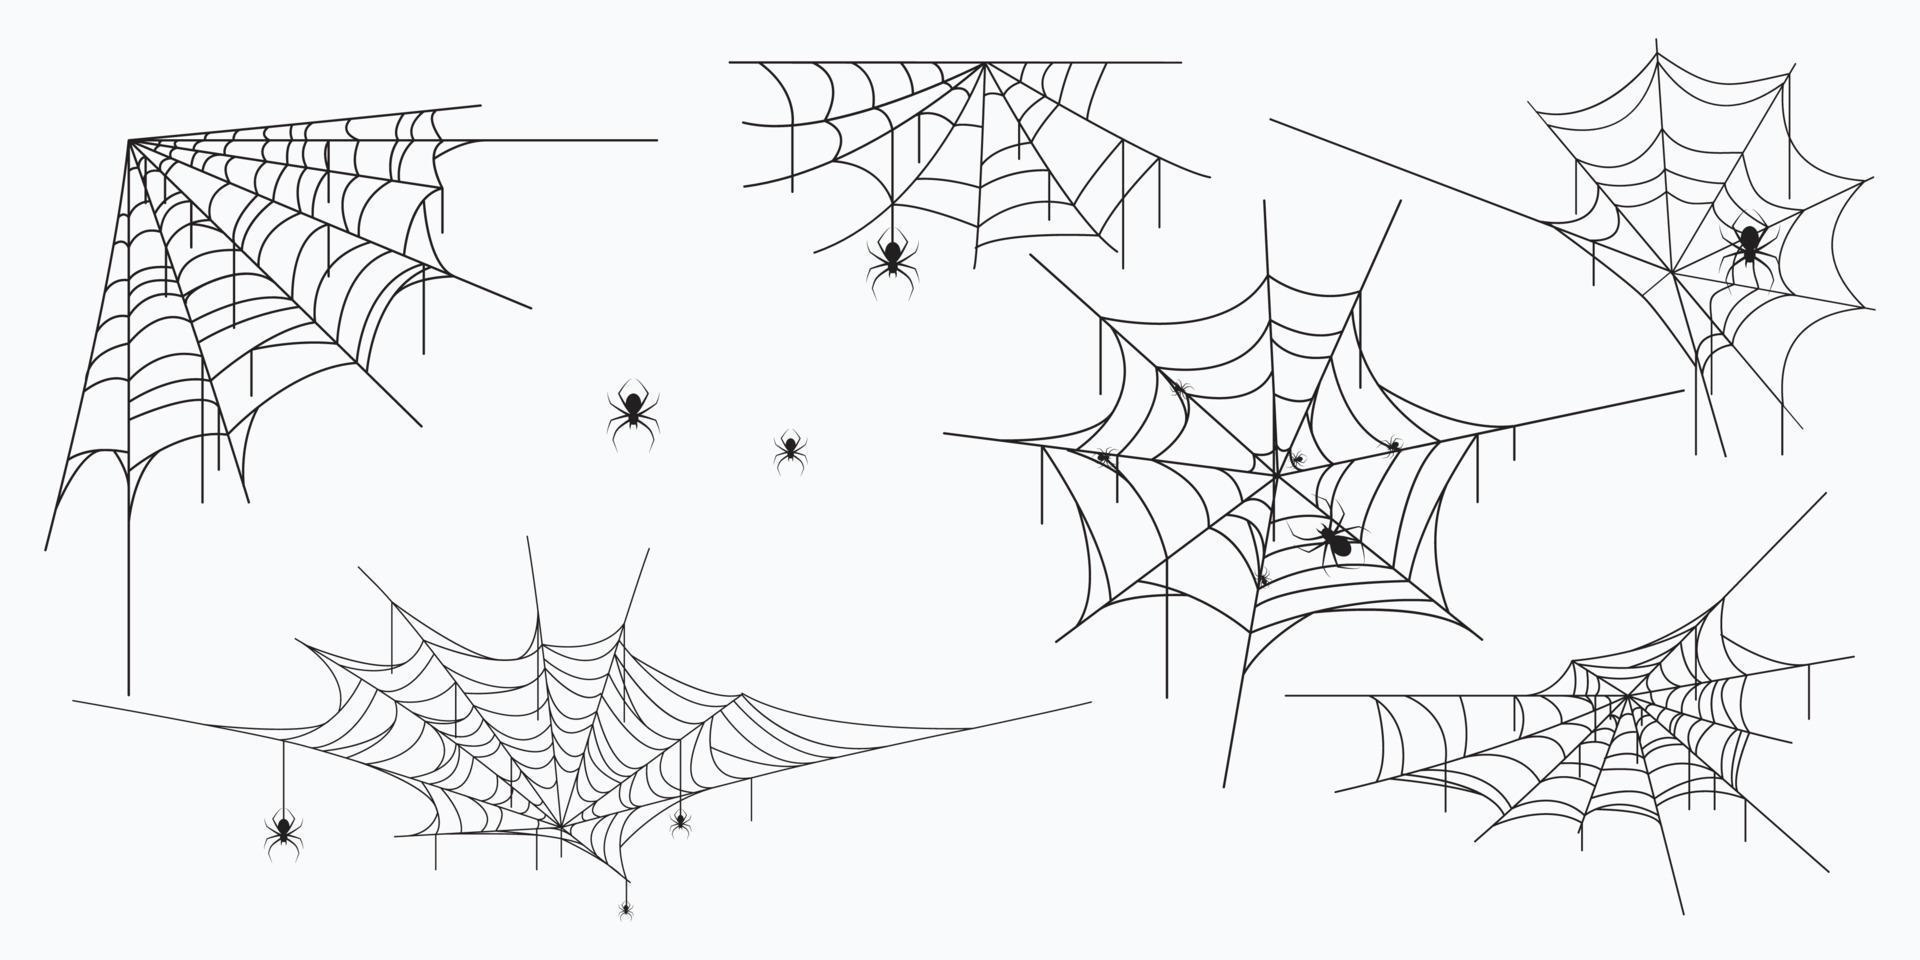 Toiles d'araignée set illustration noir et blanc vecteur eps10